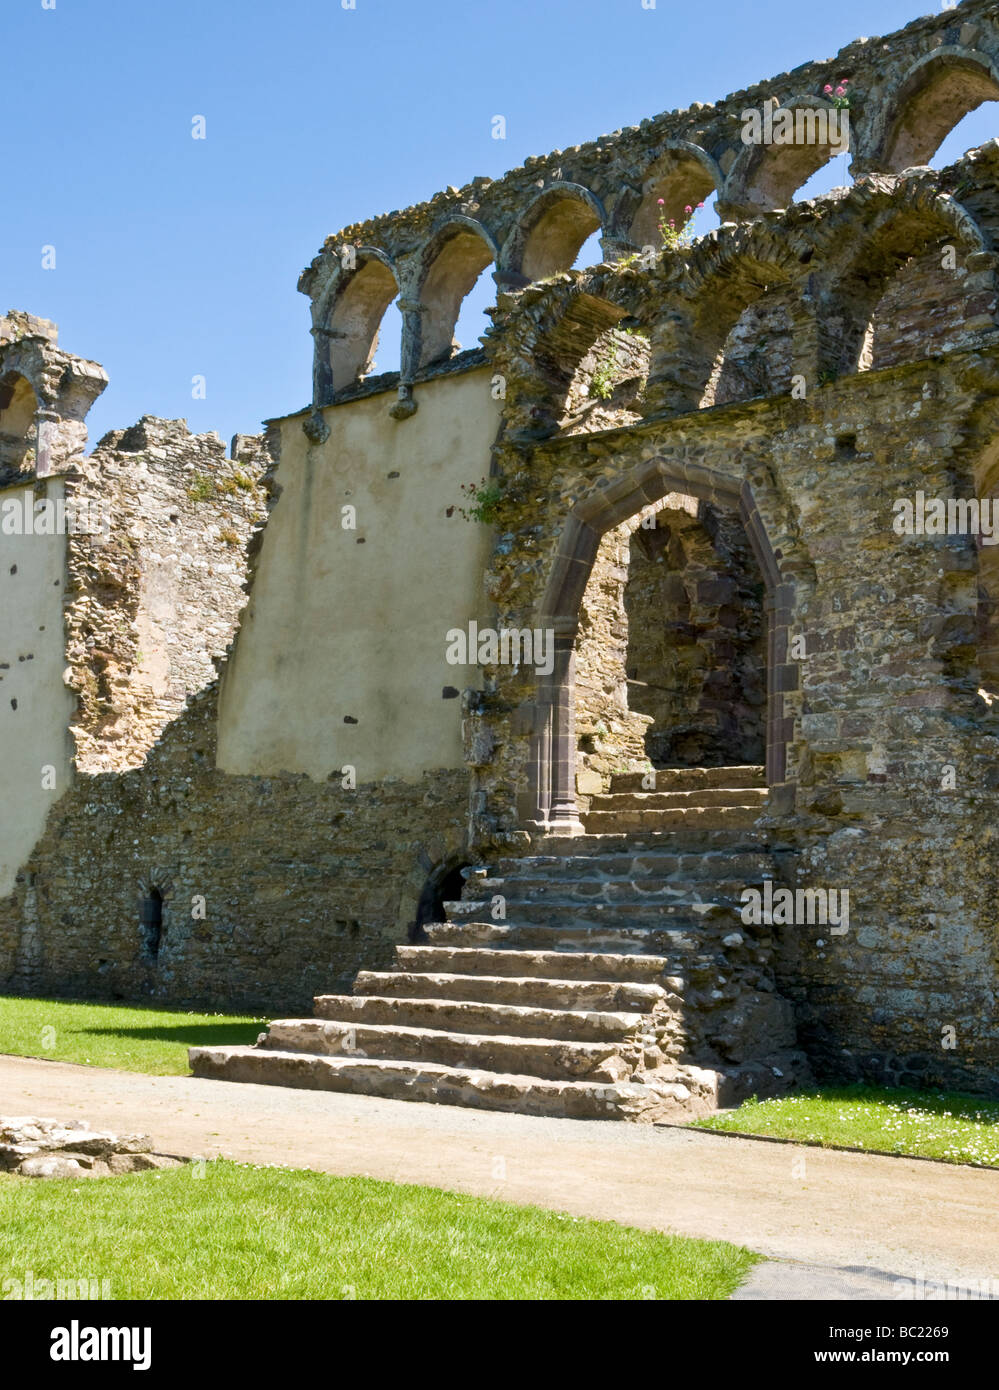 Ruins of Bishop's Palace at St Davids, Pembrokeshire Stock Photo